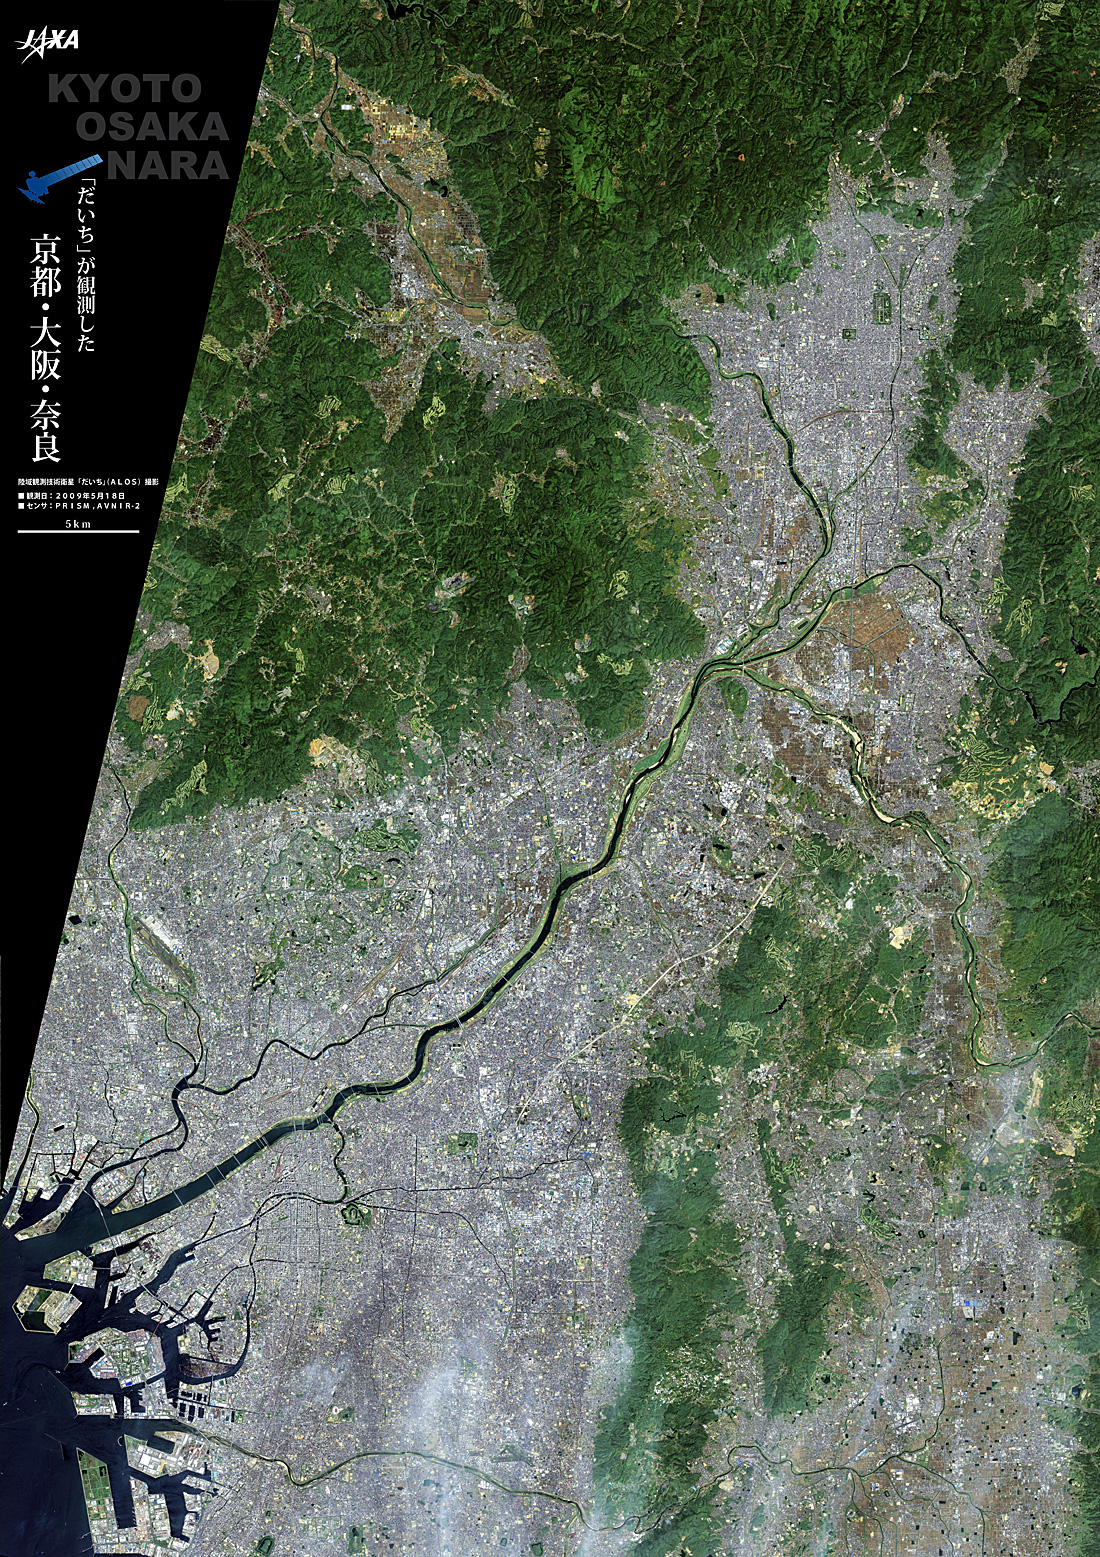 だいちから見た日本の都市 京都府、大阪府、奈良県:衛星画像（ポスター仕上げ）